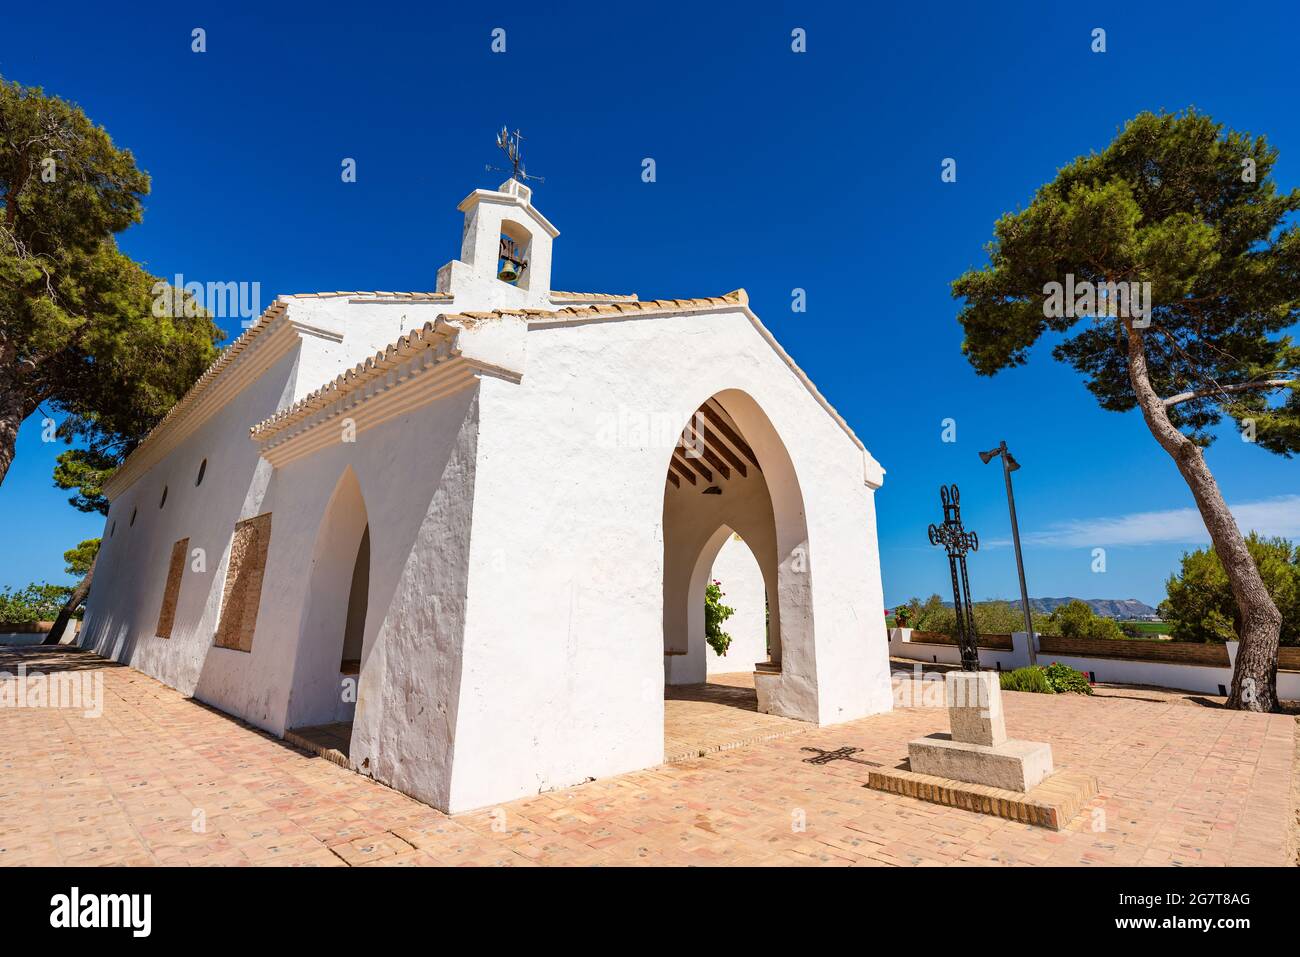 Sueca, Spanien. Eremitage der Heiligen. Muntanyeta dels Sants. Weißes kleines Gebäude auf einem Hügel. Ort der Anbetung. Stockfoto